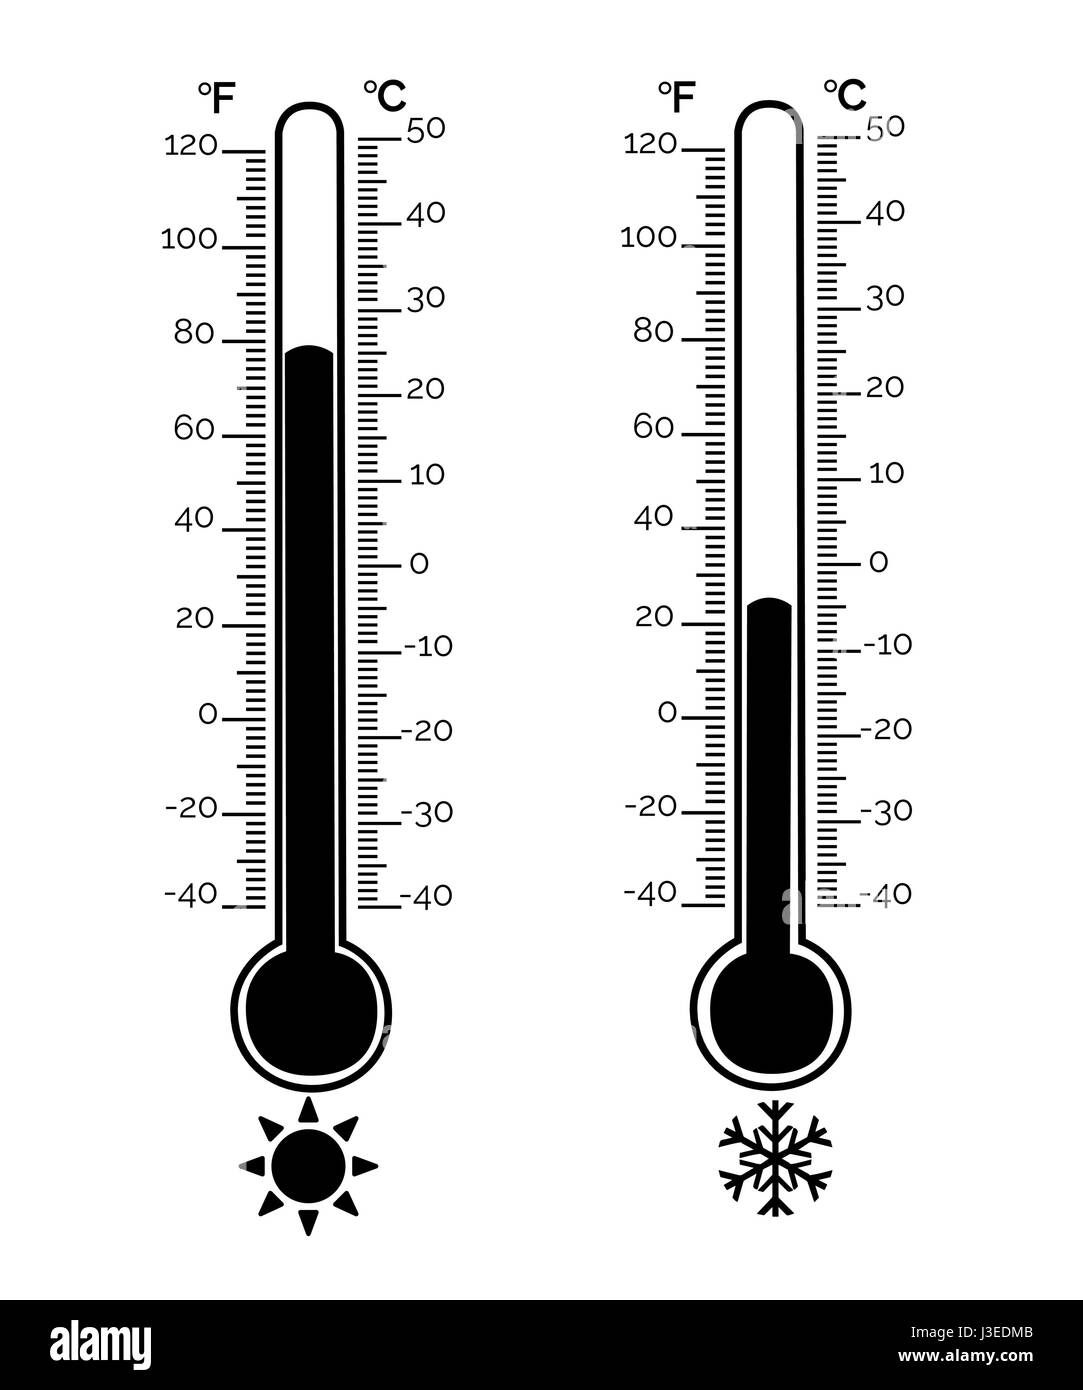 Equipo de termómetro mostrando caliente o frío .en grados